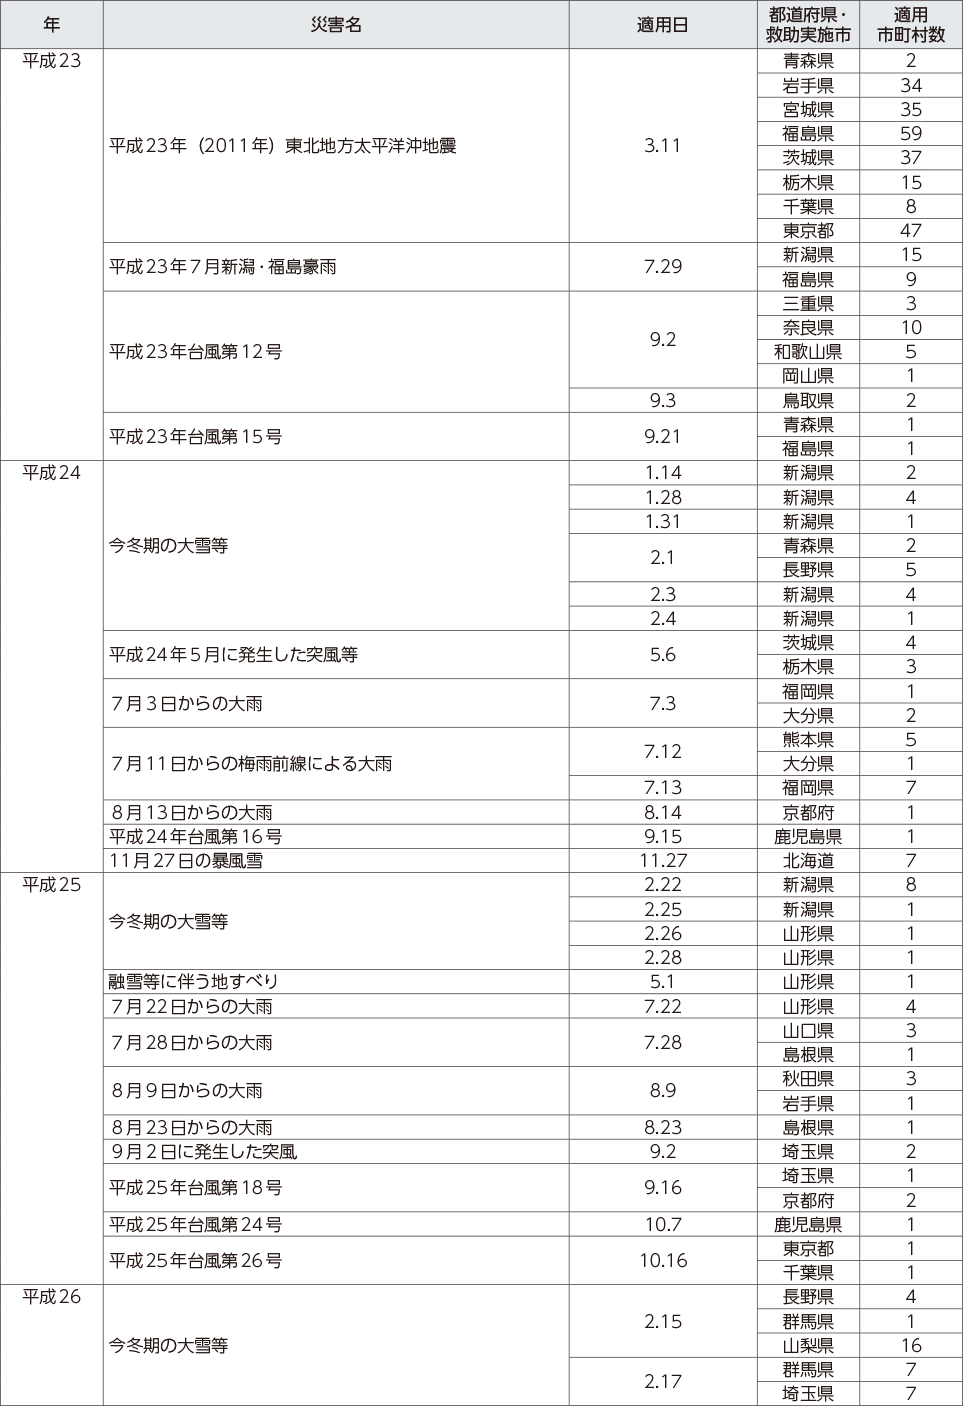 附属資料12　災害救助法の適用実績（阪神・淡路大震災以降）（3）